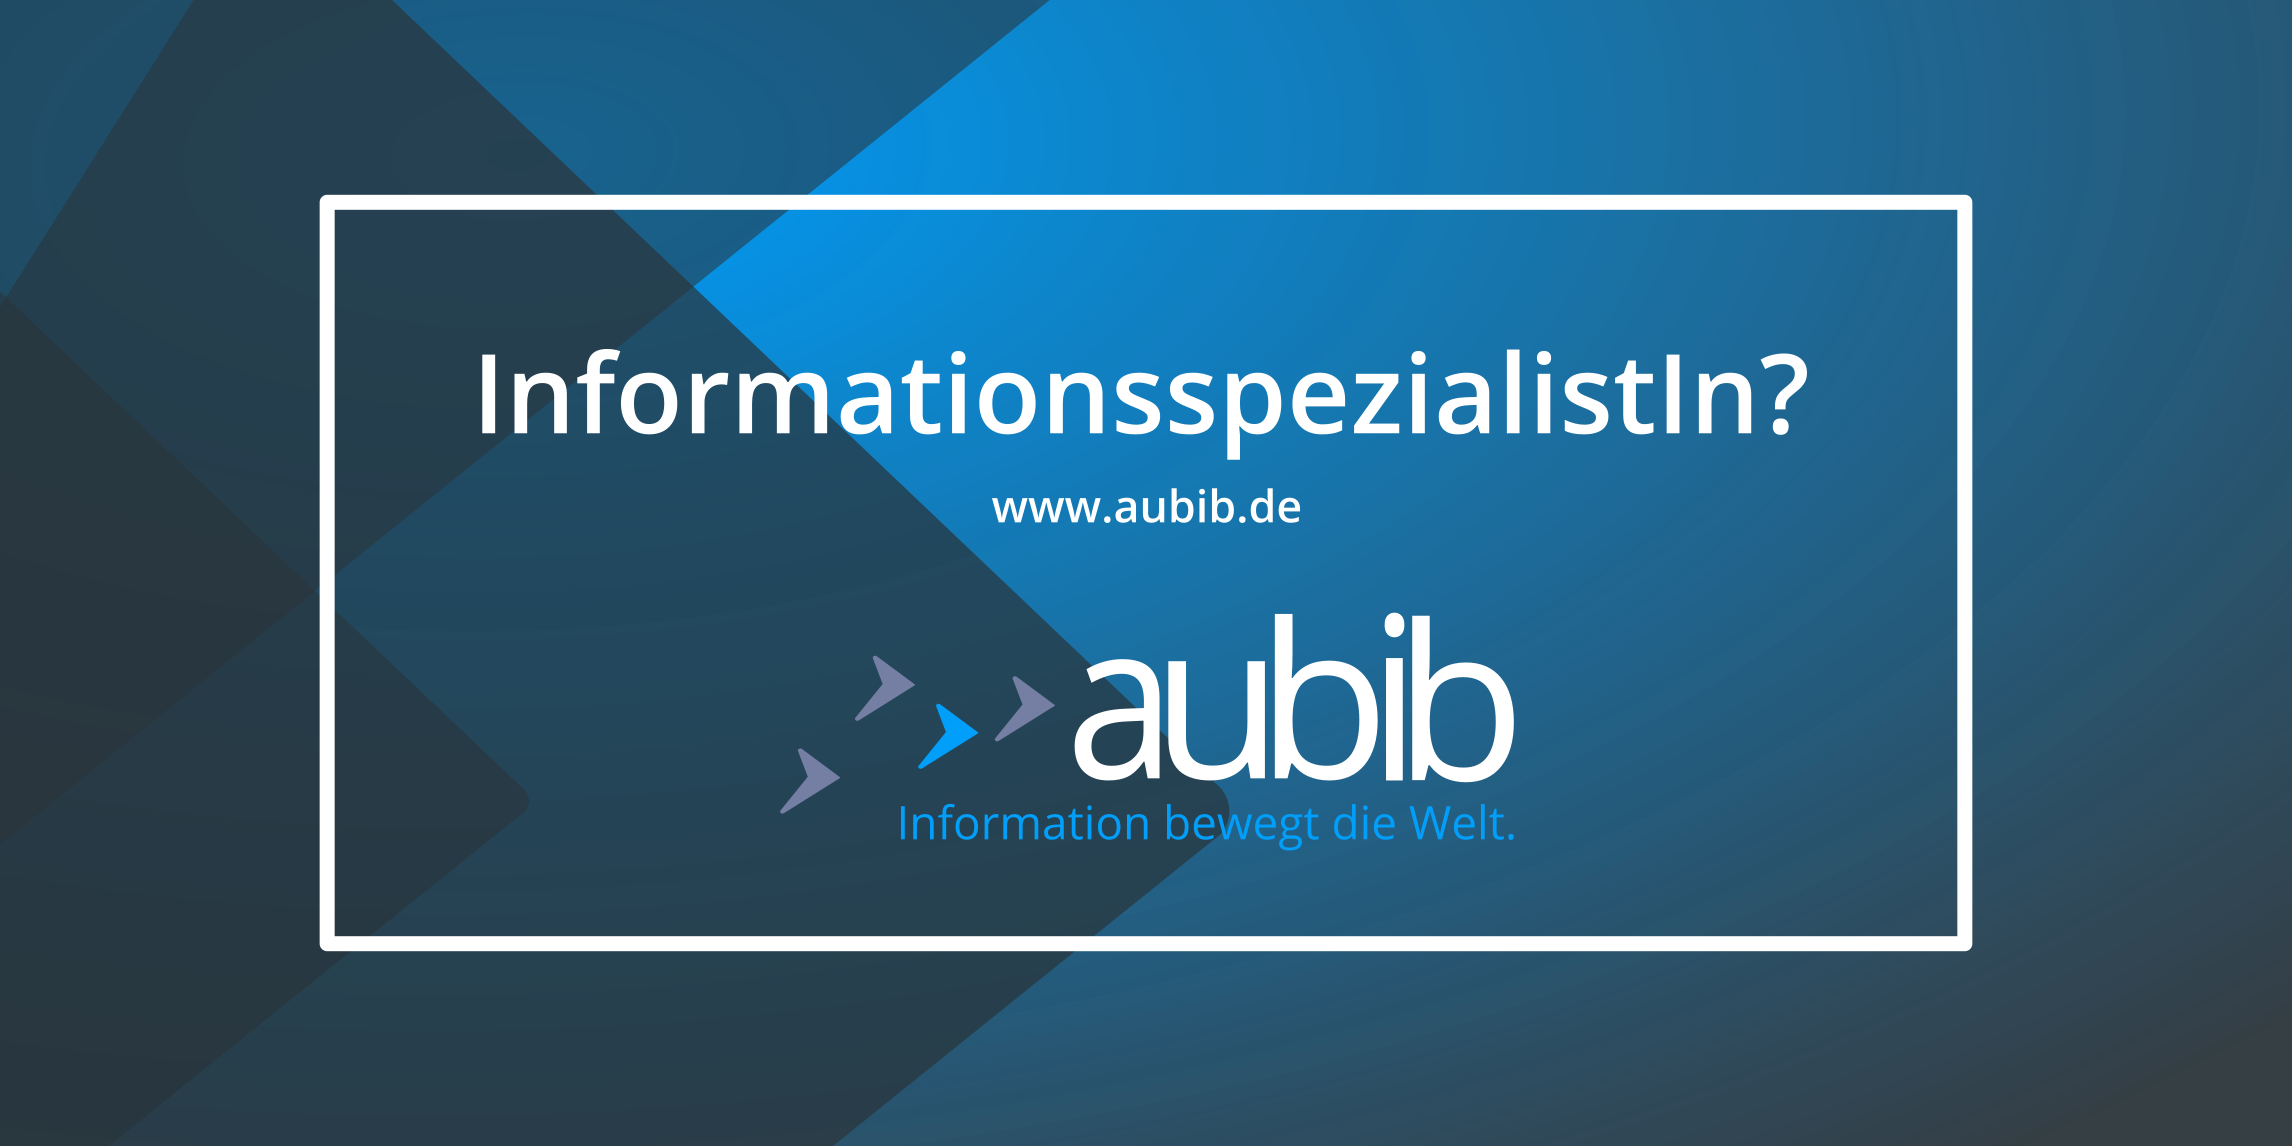 Banner zu aubib.de mit Logo der Website und Schriftzug „InformationsspezialistIn?“